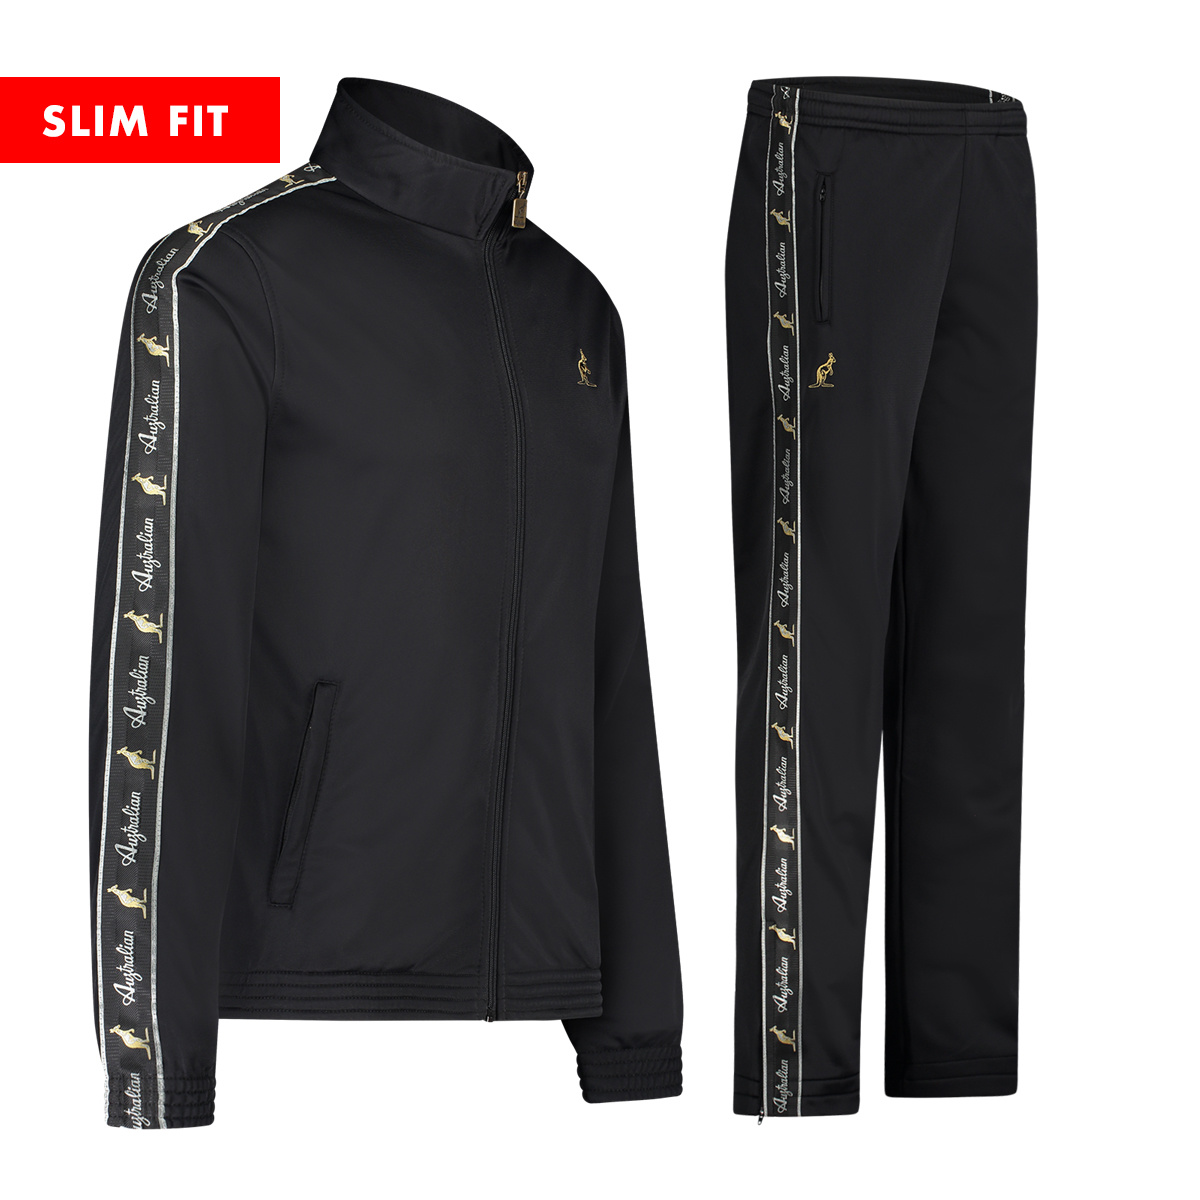 stap in Malen Gevoelig voor Australian Slim Fit Jacket + Slim Fit Broek (Black) - Gabberwear